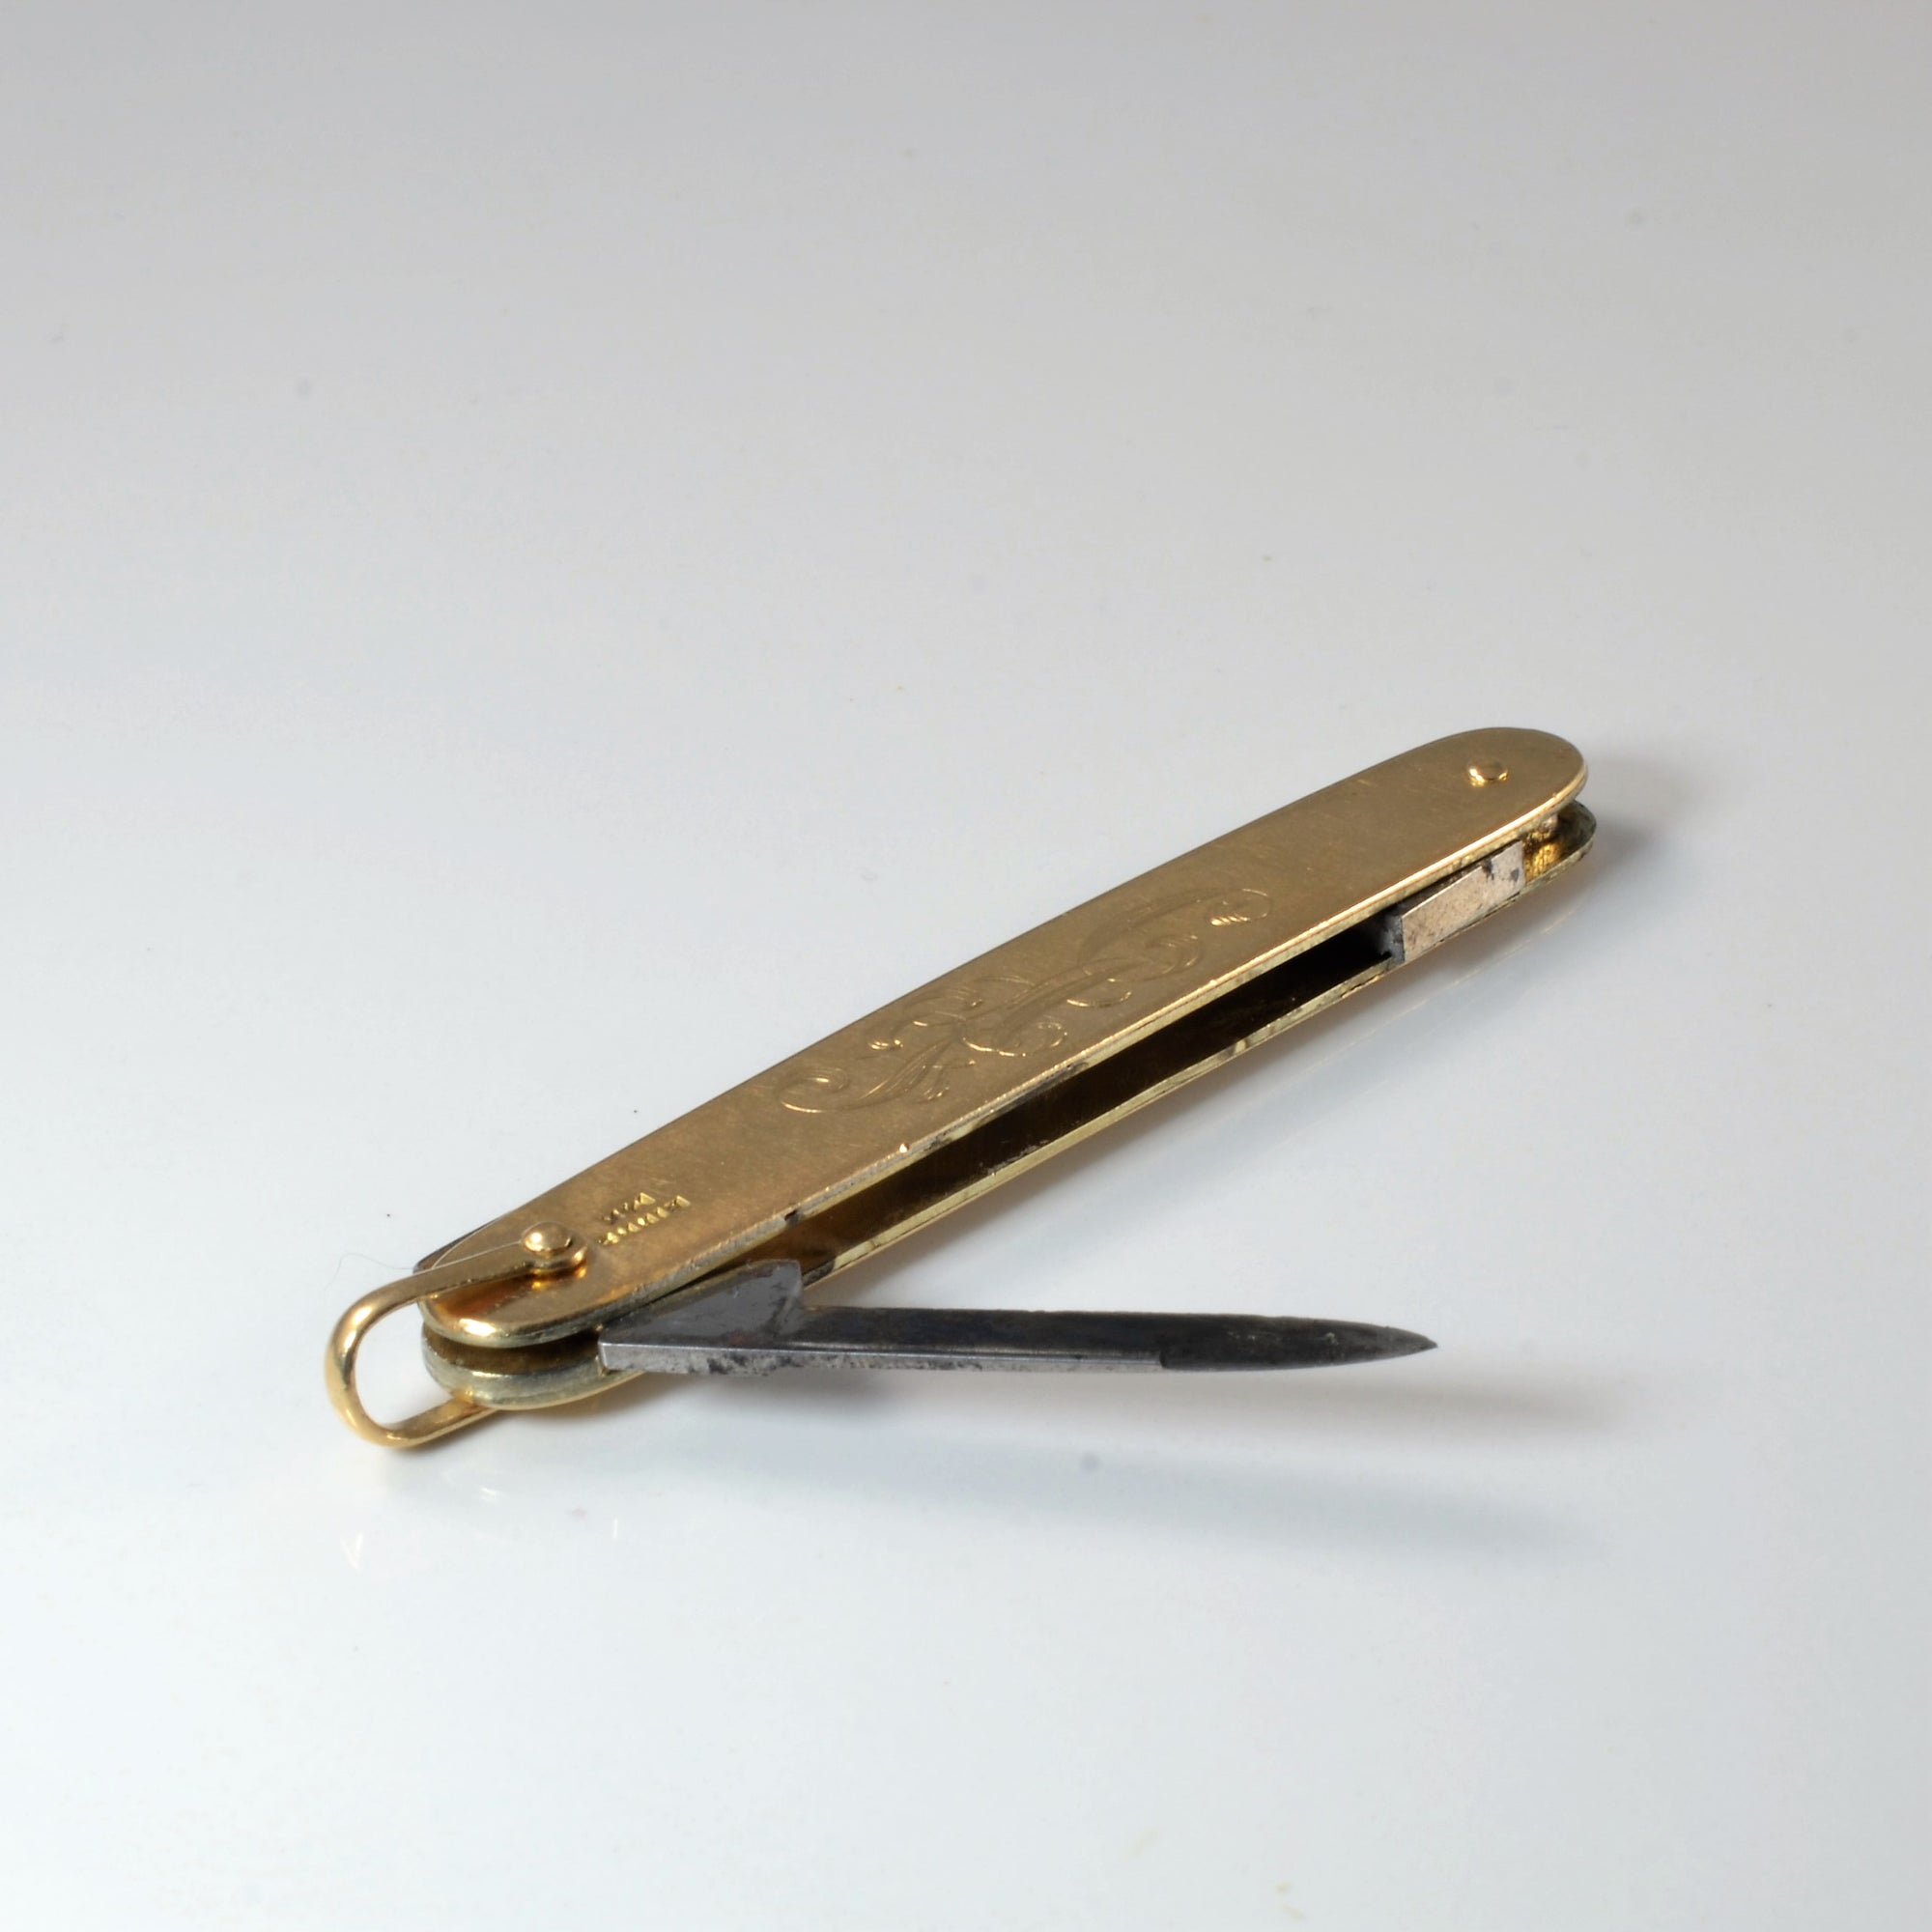 Birks' Gold Pocket Knife